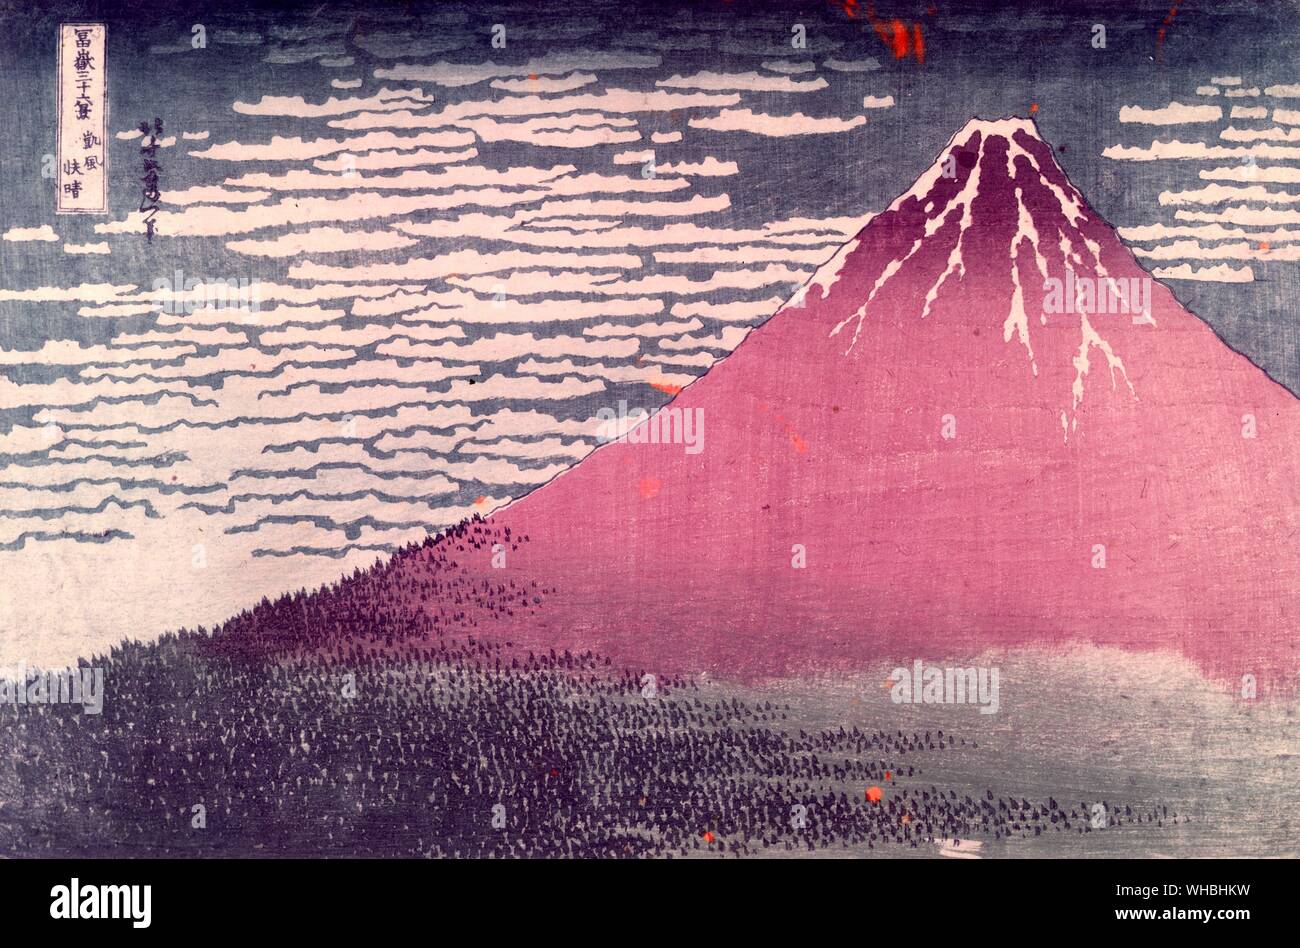 Katsushika HOKUSAI : 1760 - 10 Maggio 1849 artista giapponese , ukiyo-e pittore e incisore del periodo Edo , visto qui il Monte Fuji in chiaro meteo Foto Stock